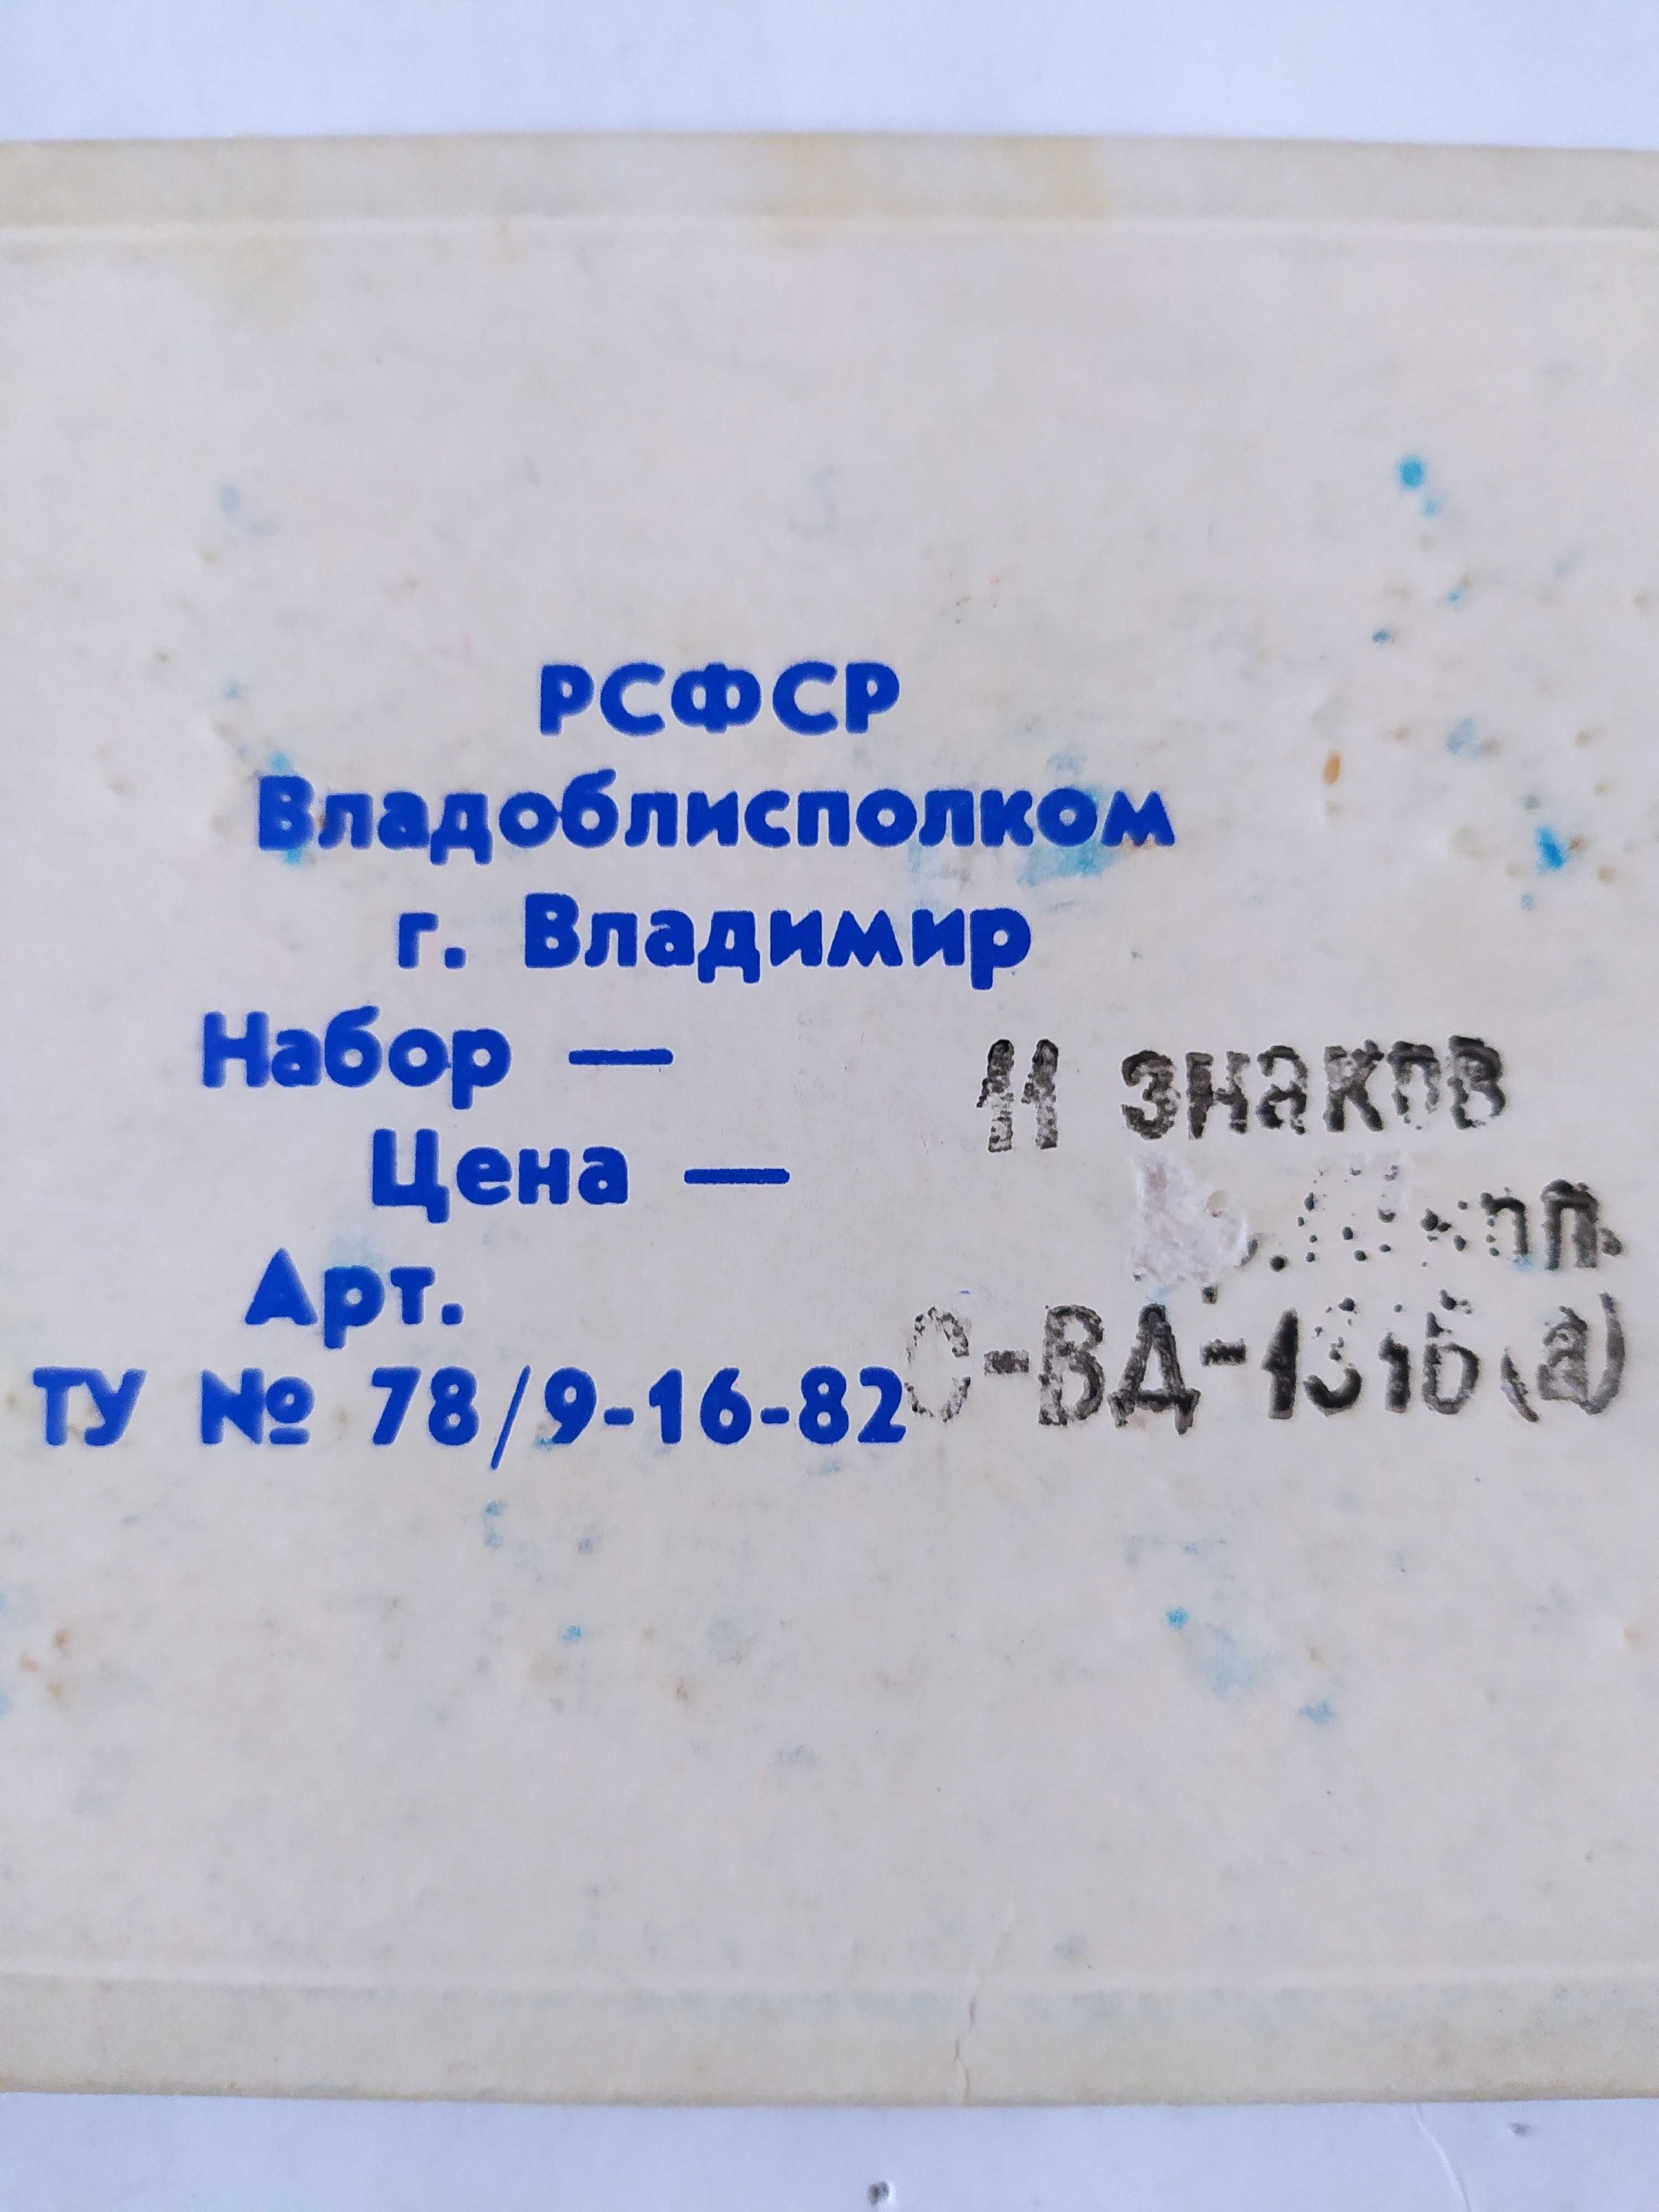 Значки гербы городов, серия "Владимирская сувенирная", 1970-80 гг.